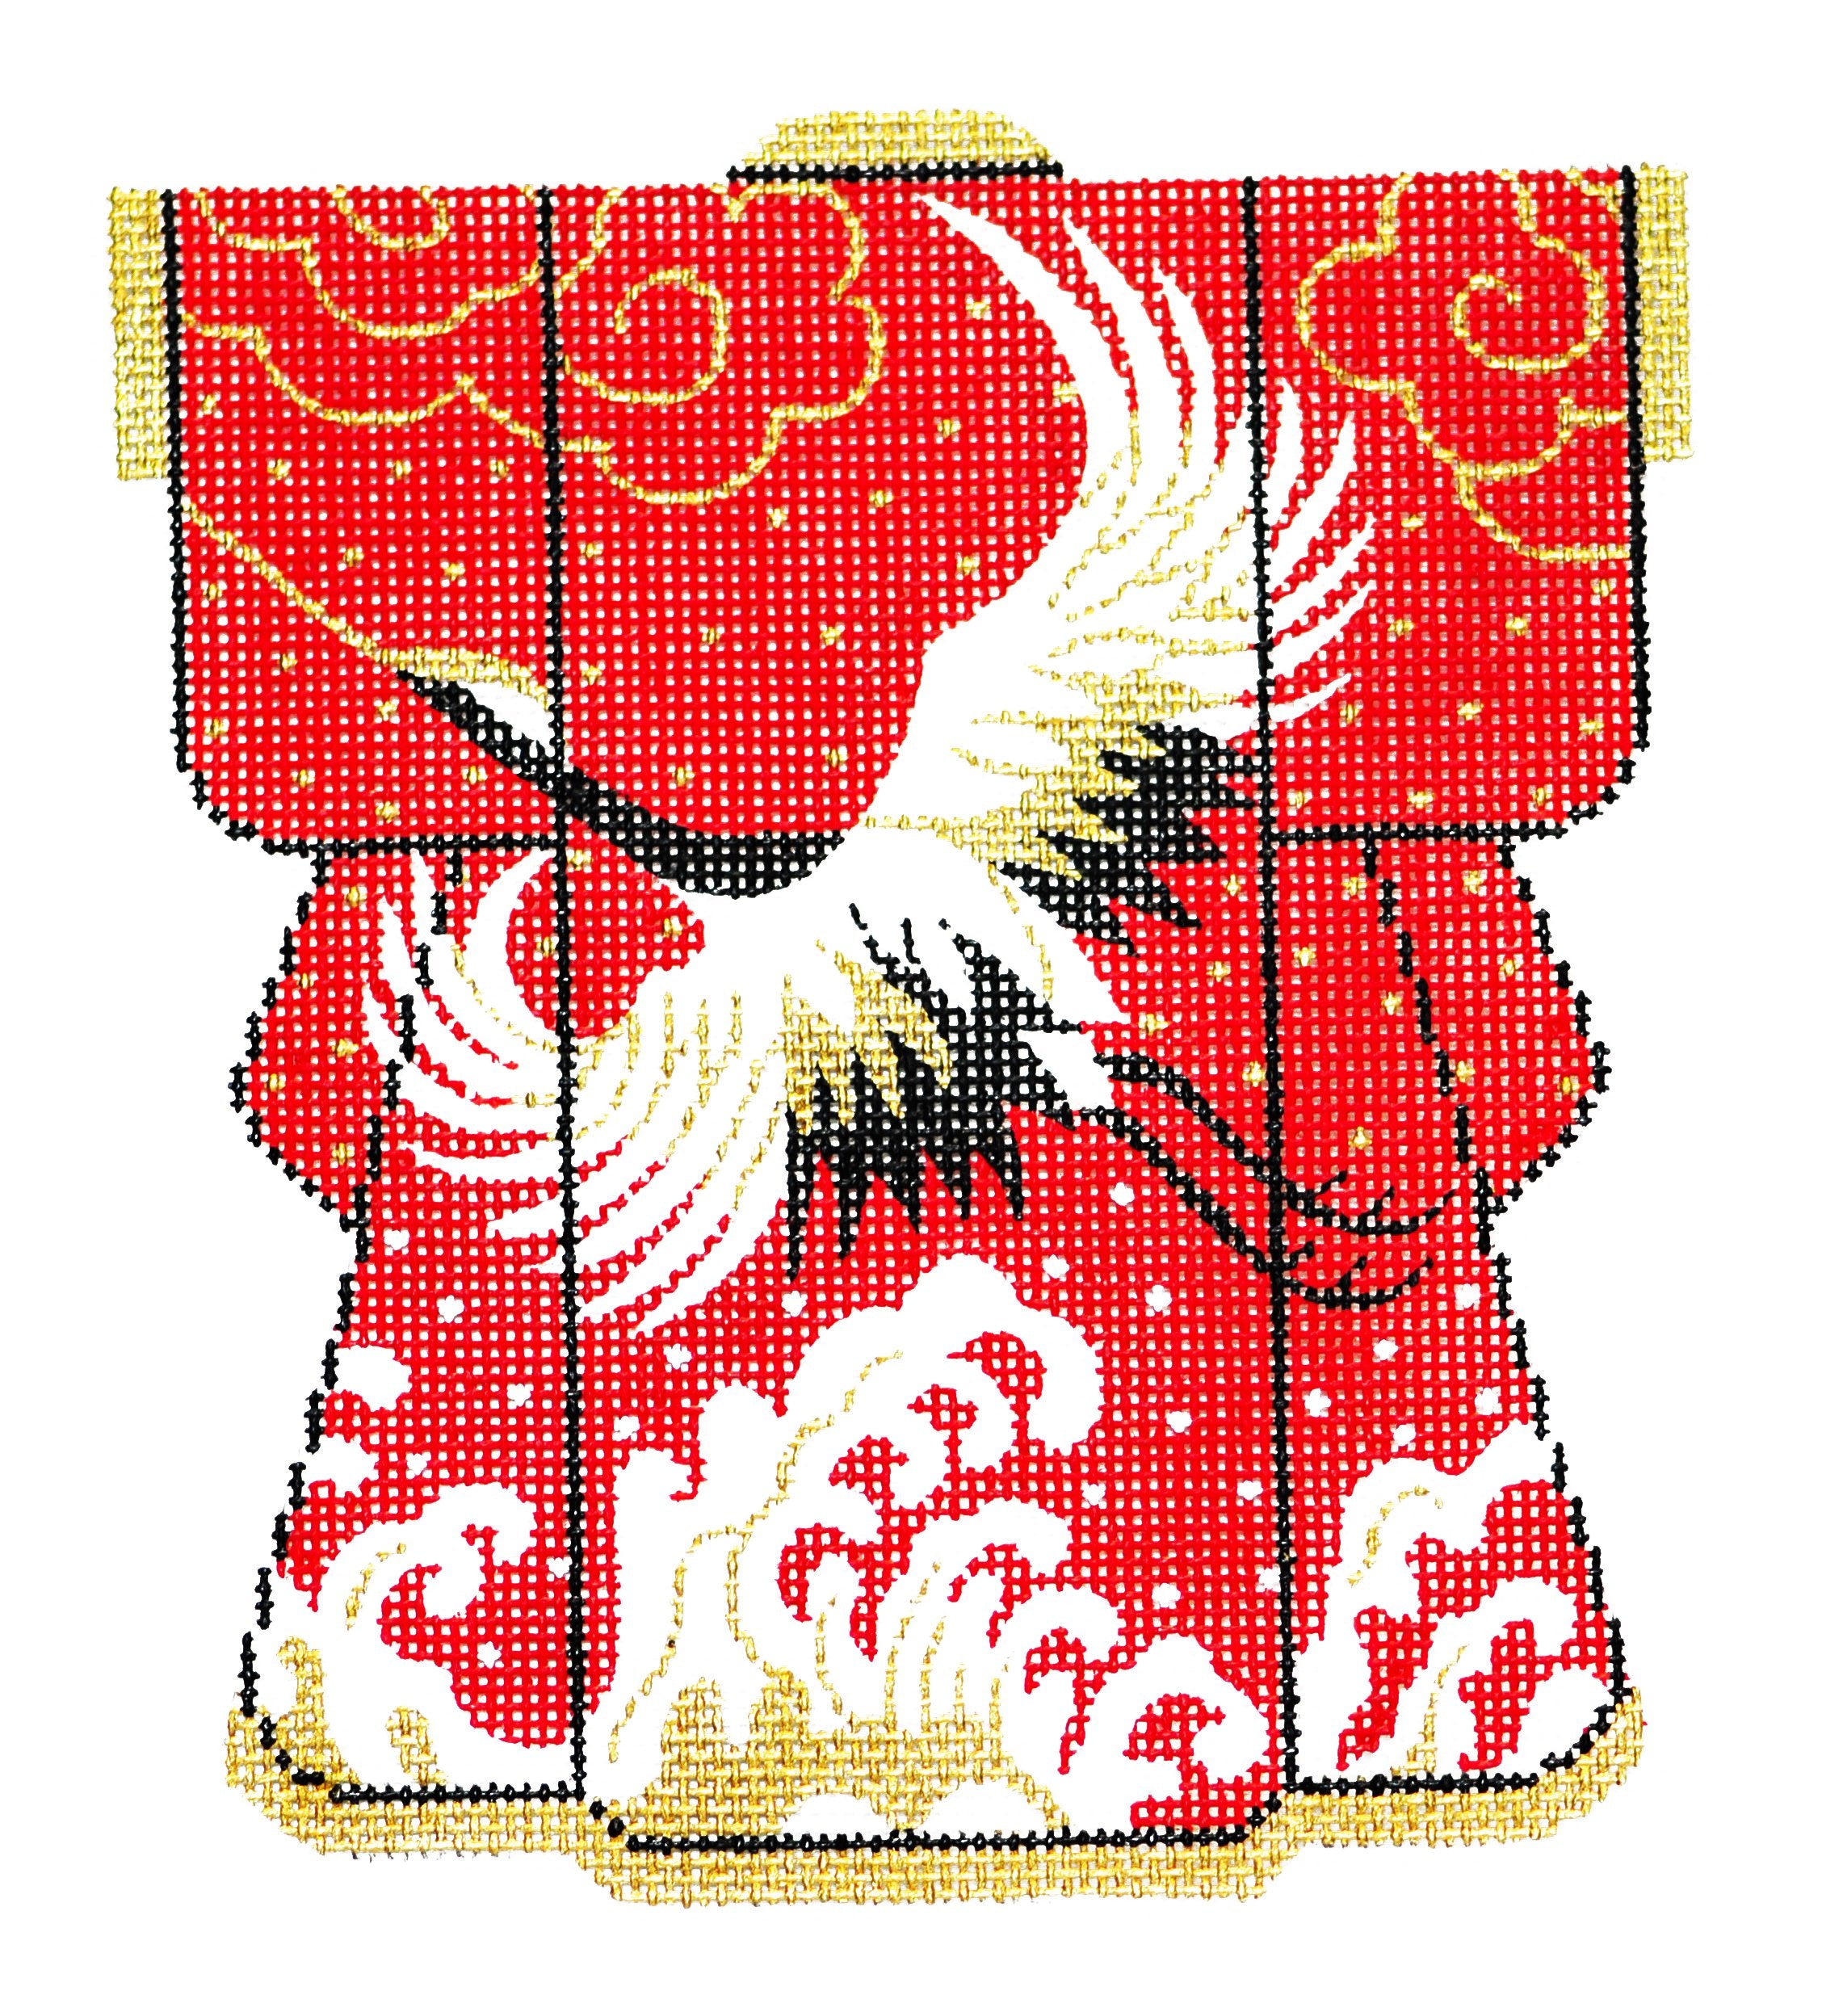 Wedding Kimono